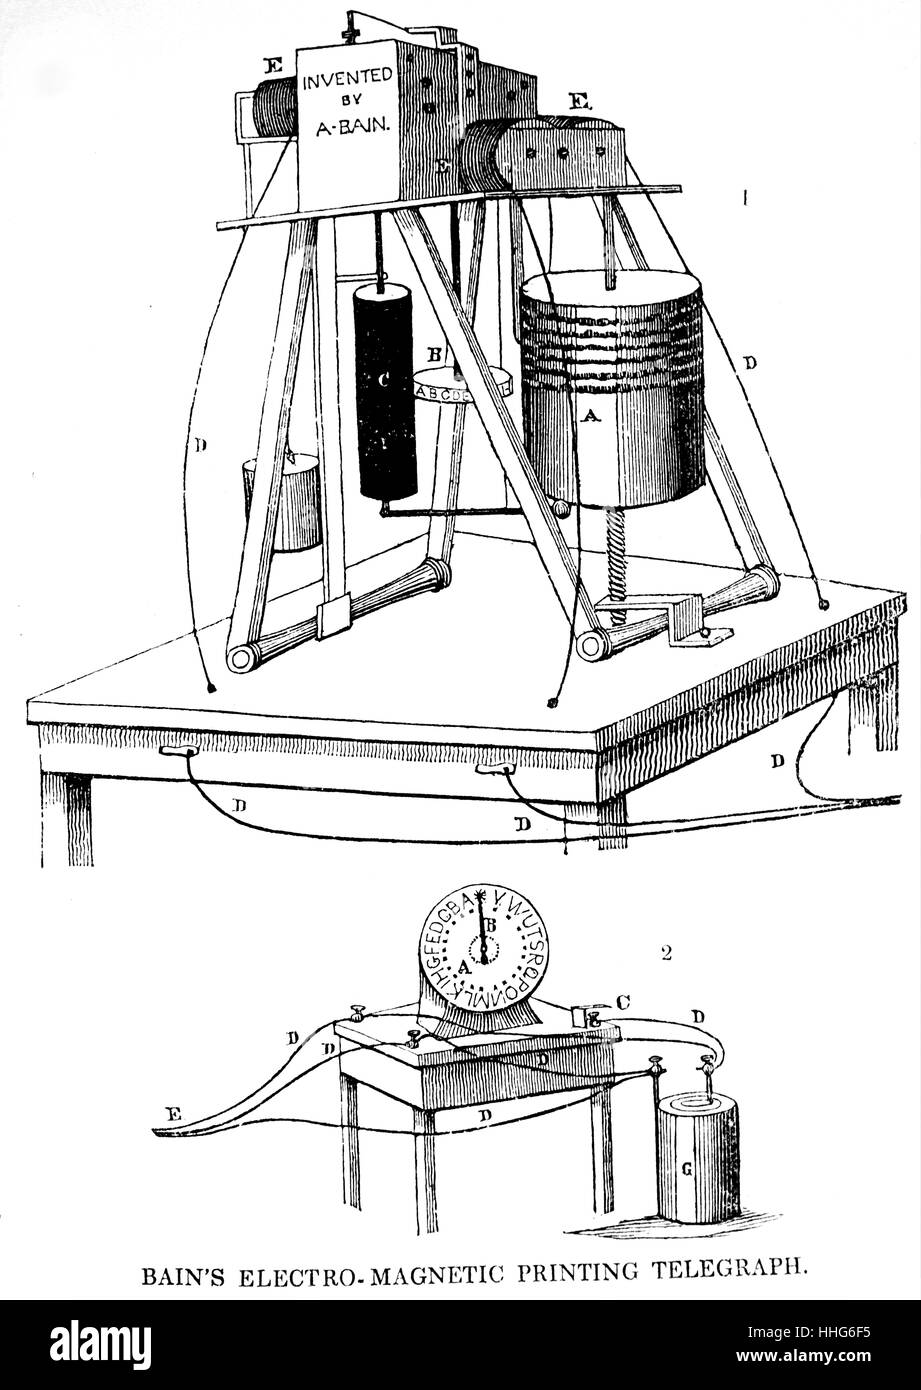 Impression électromagnétique télégraphe inventé par Alexander Bain, exposées à la Royal Polytechnic Institution, Londres. Alexander Bain était un inventeur et ingénieur écossais qui a été le premier à inventer et breveter l'horloge électrique. Il a installé le chemin de fer des lignes télégraphiques entre Édimbourg et Glasgow. Banque D'Images